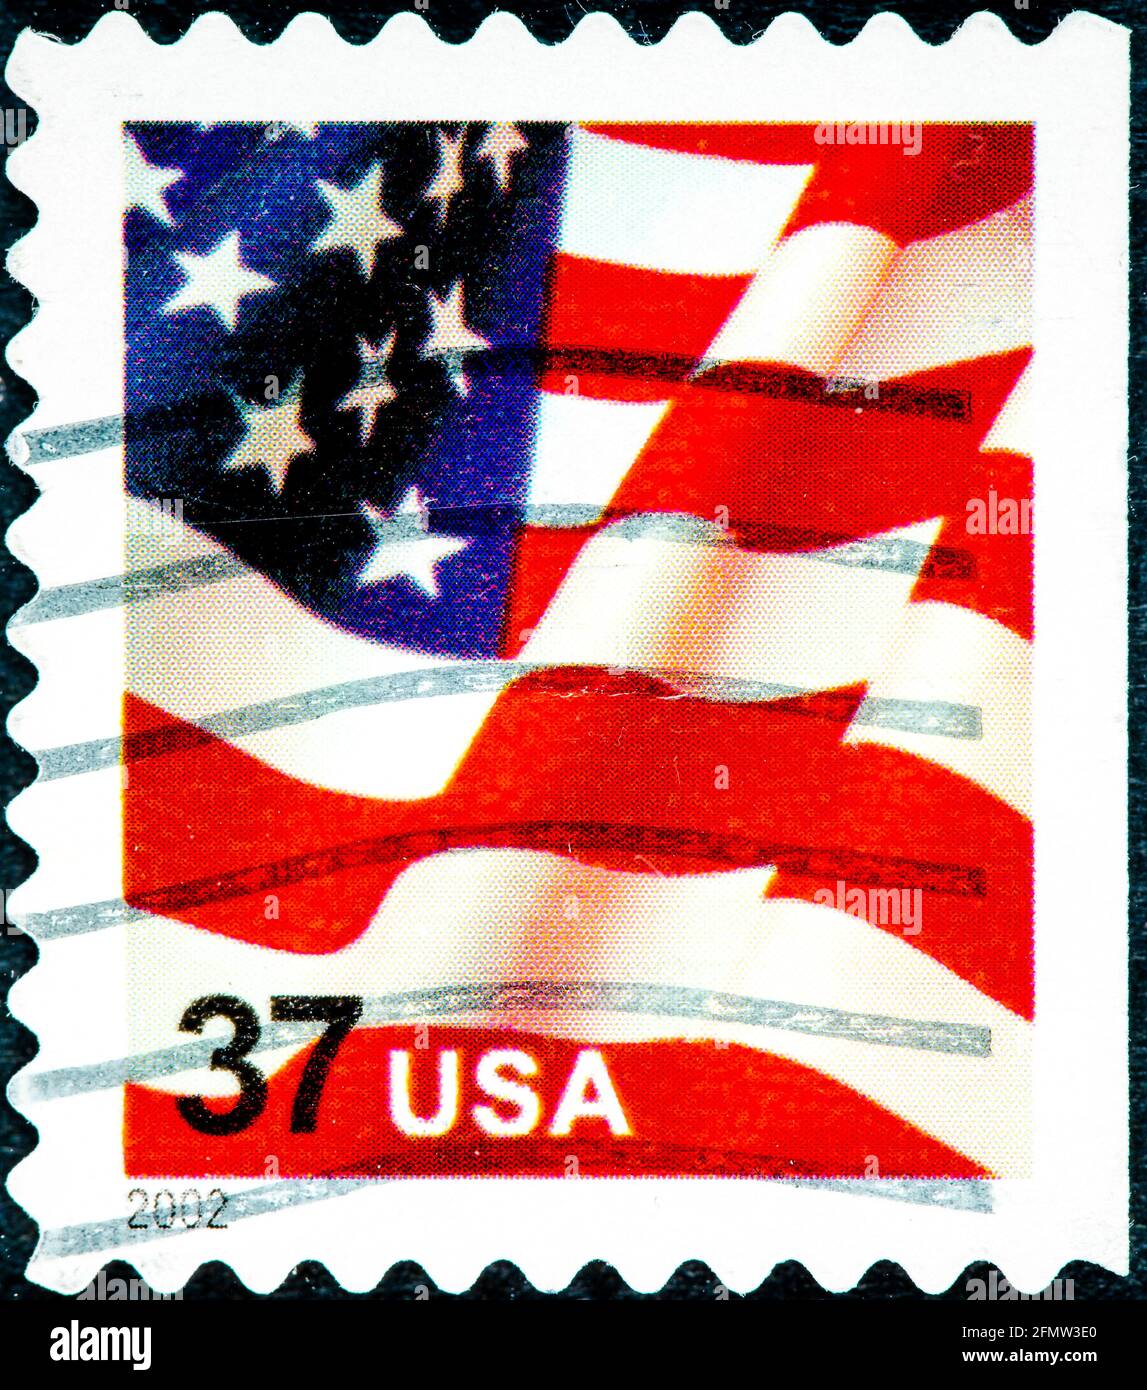 STATI UNITI - CIRCA 2002: Un francobollo stampato negli Stati Uniti, presenta bandiera americana ondulata, prima classe, circa 2002 Foto Stock